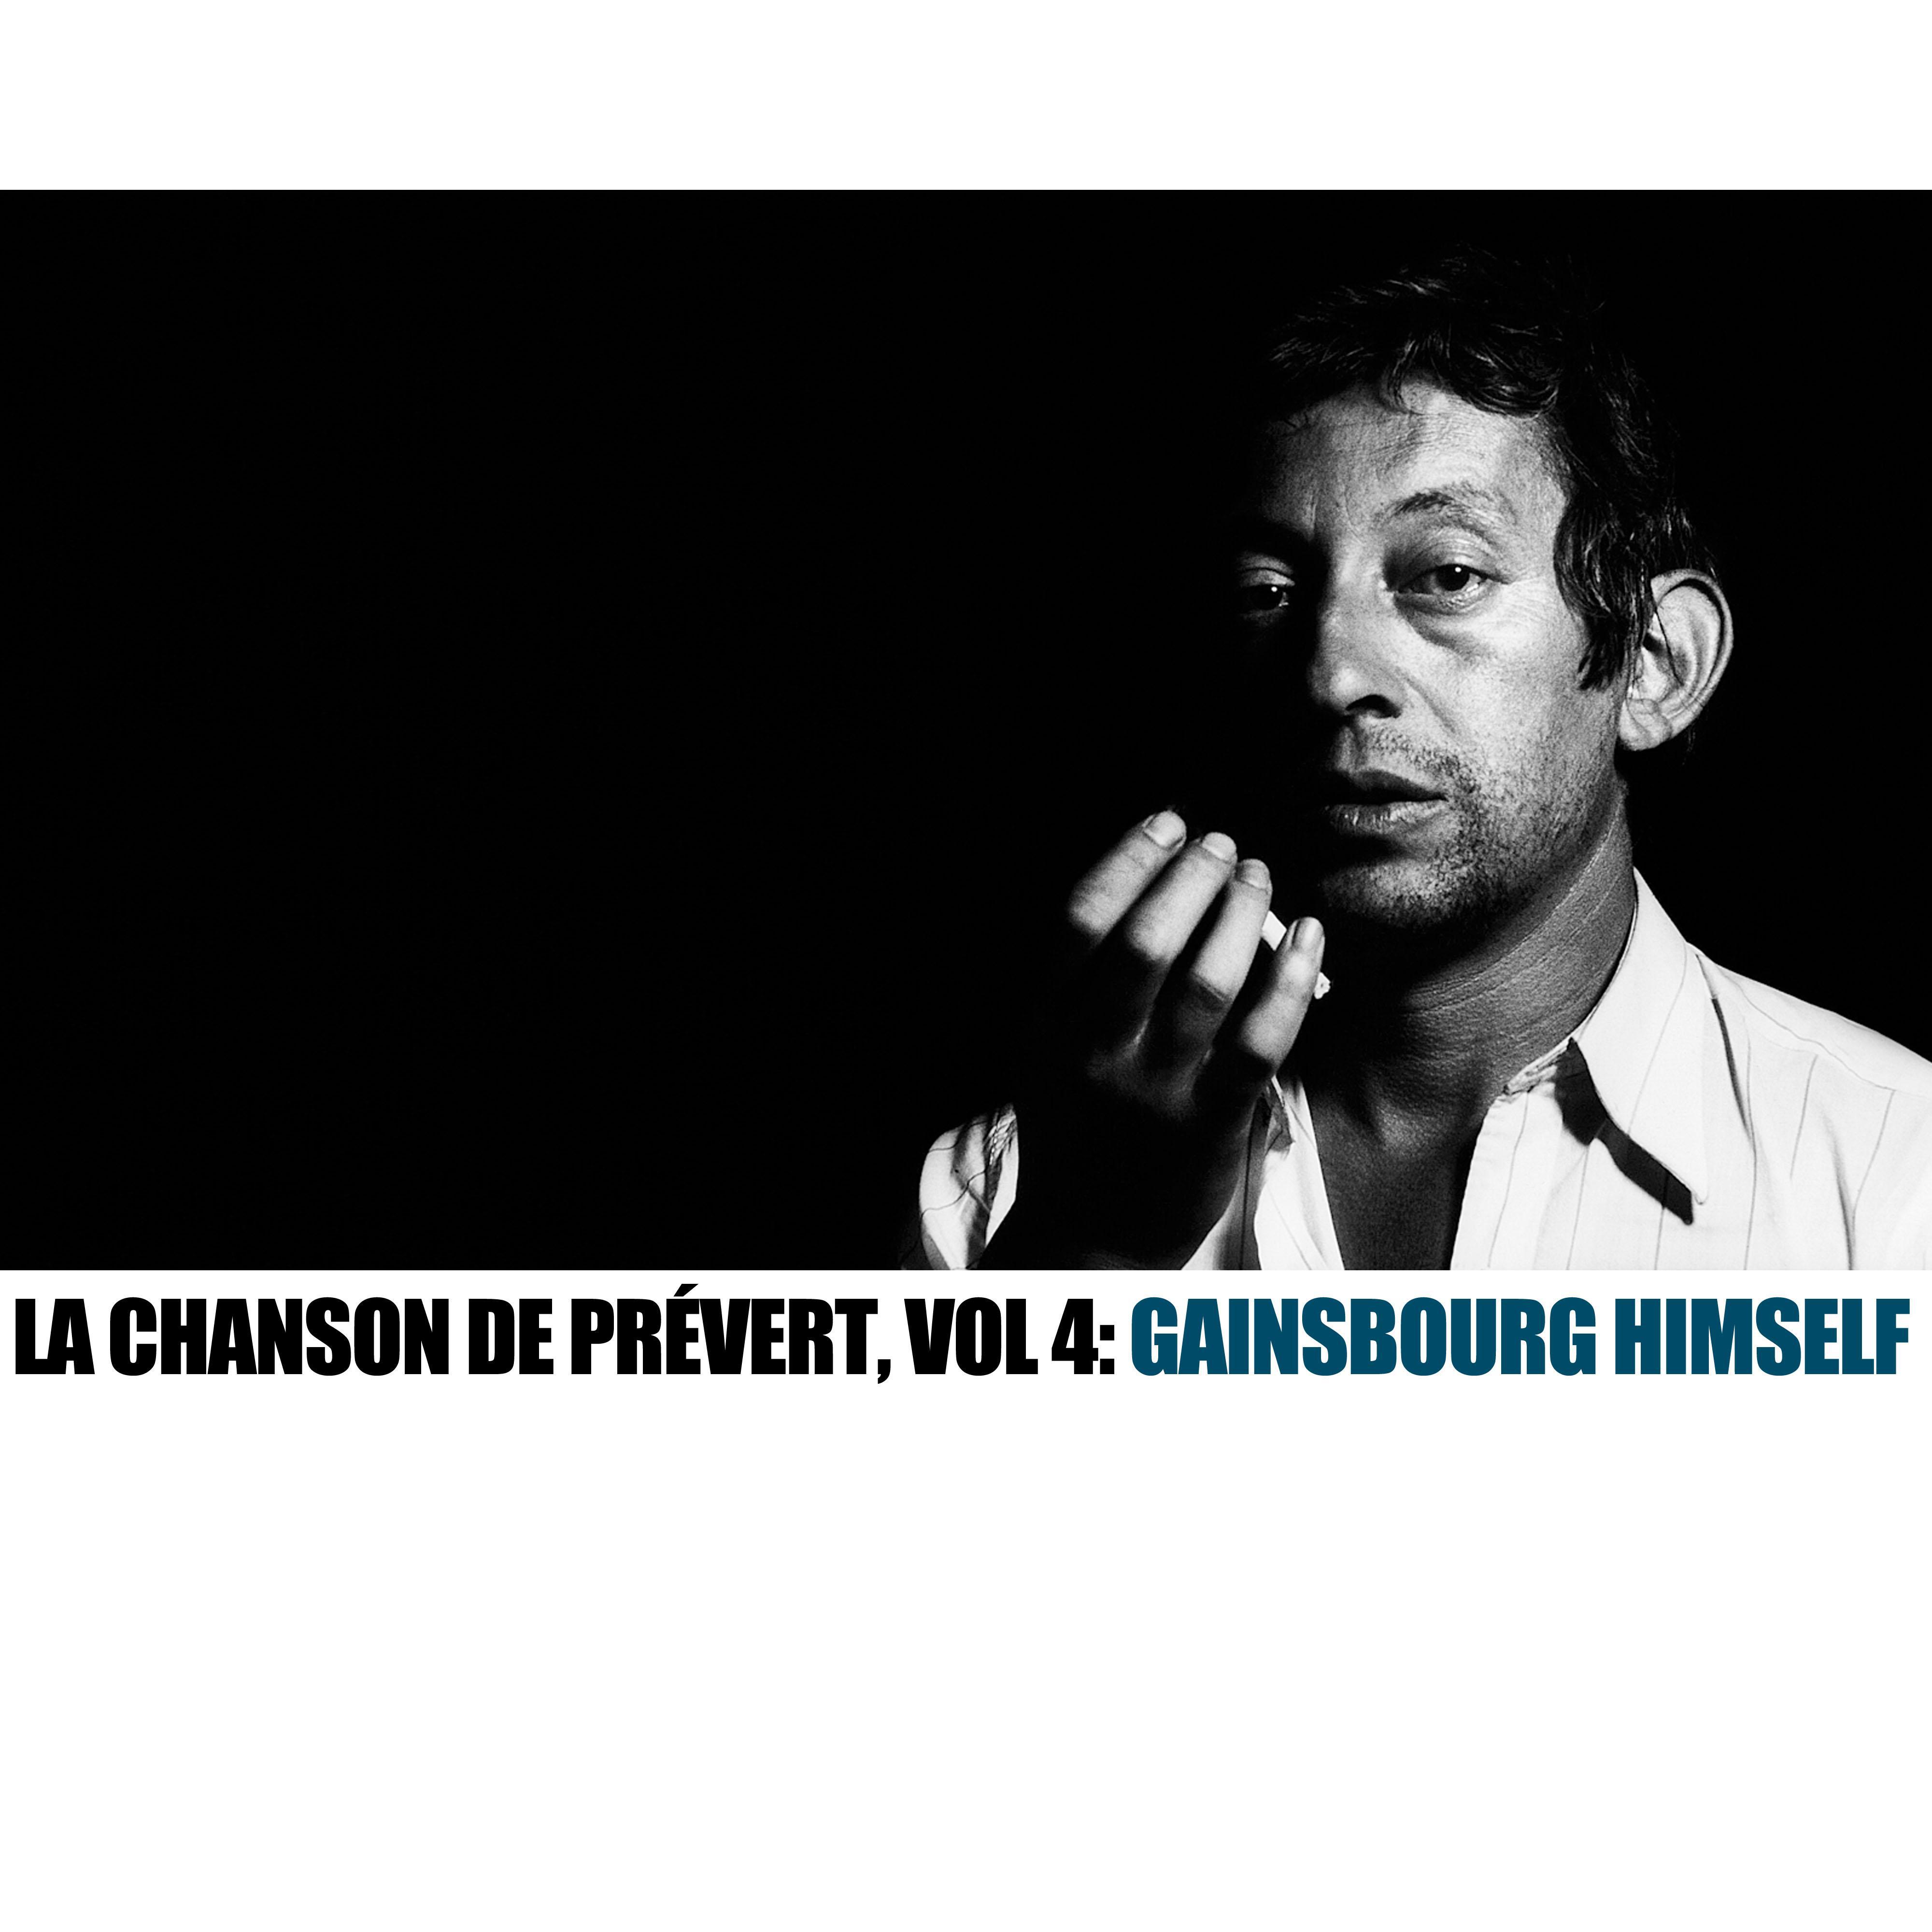 La chanson de Pre vert, Vol. 4: Gainsbourg Himself